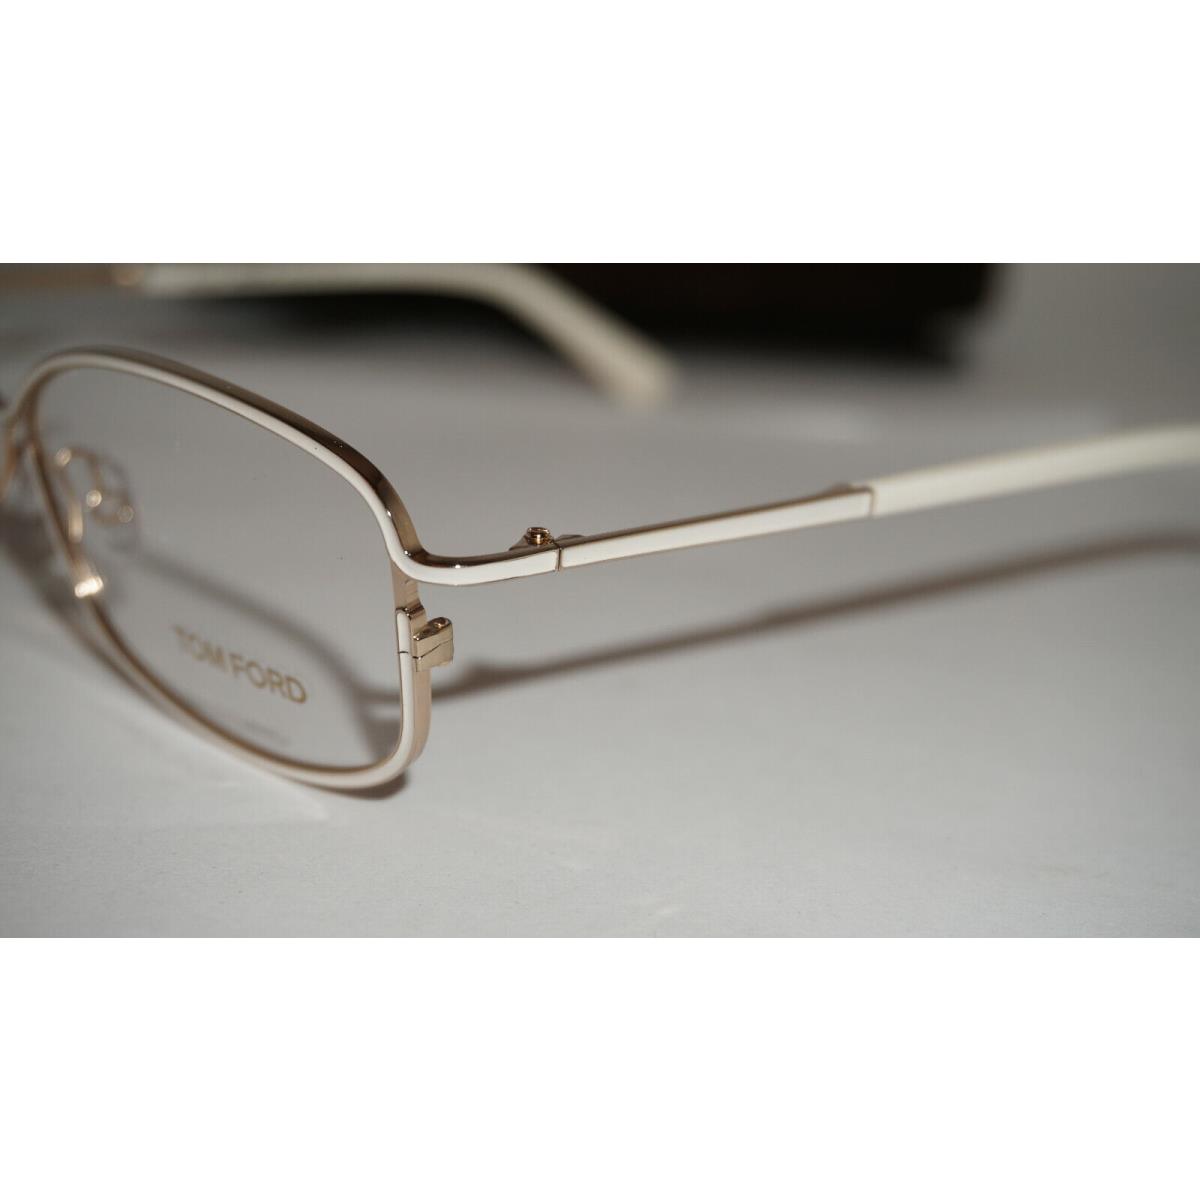 Tom Ford eyeglasses  - White Gold, Frame: White Gold TF5191 028 54 13 135 3